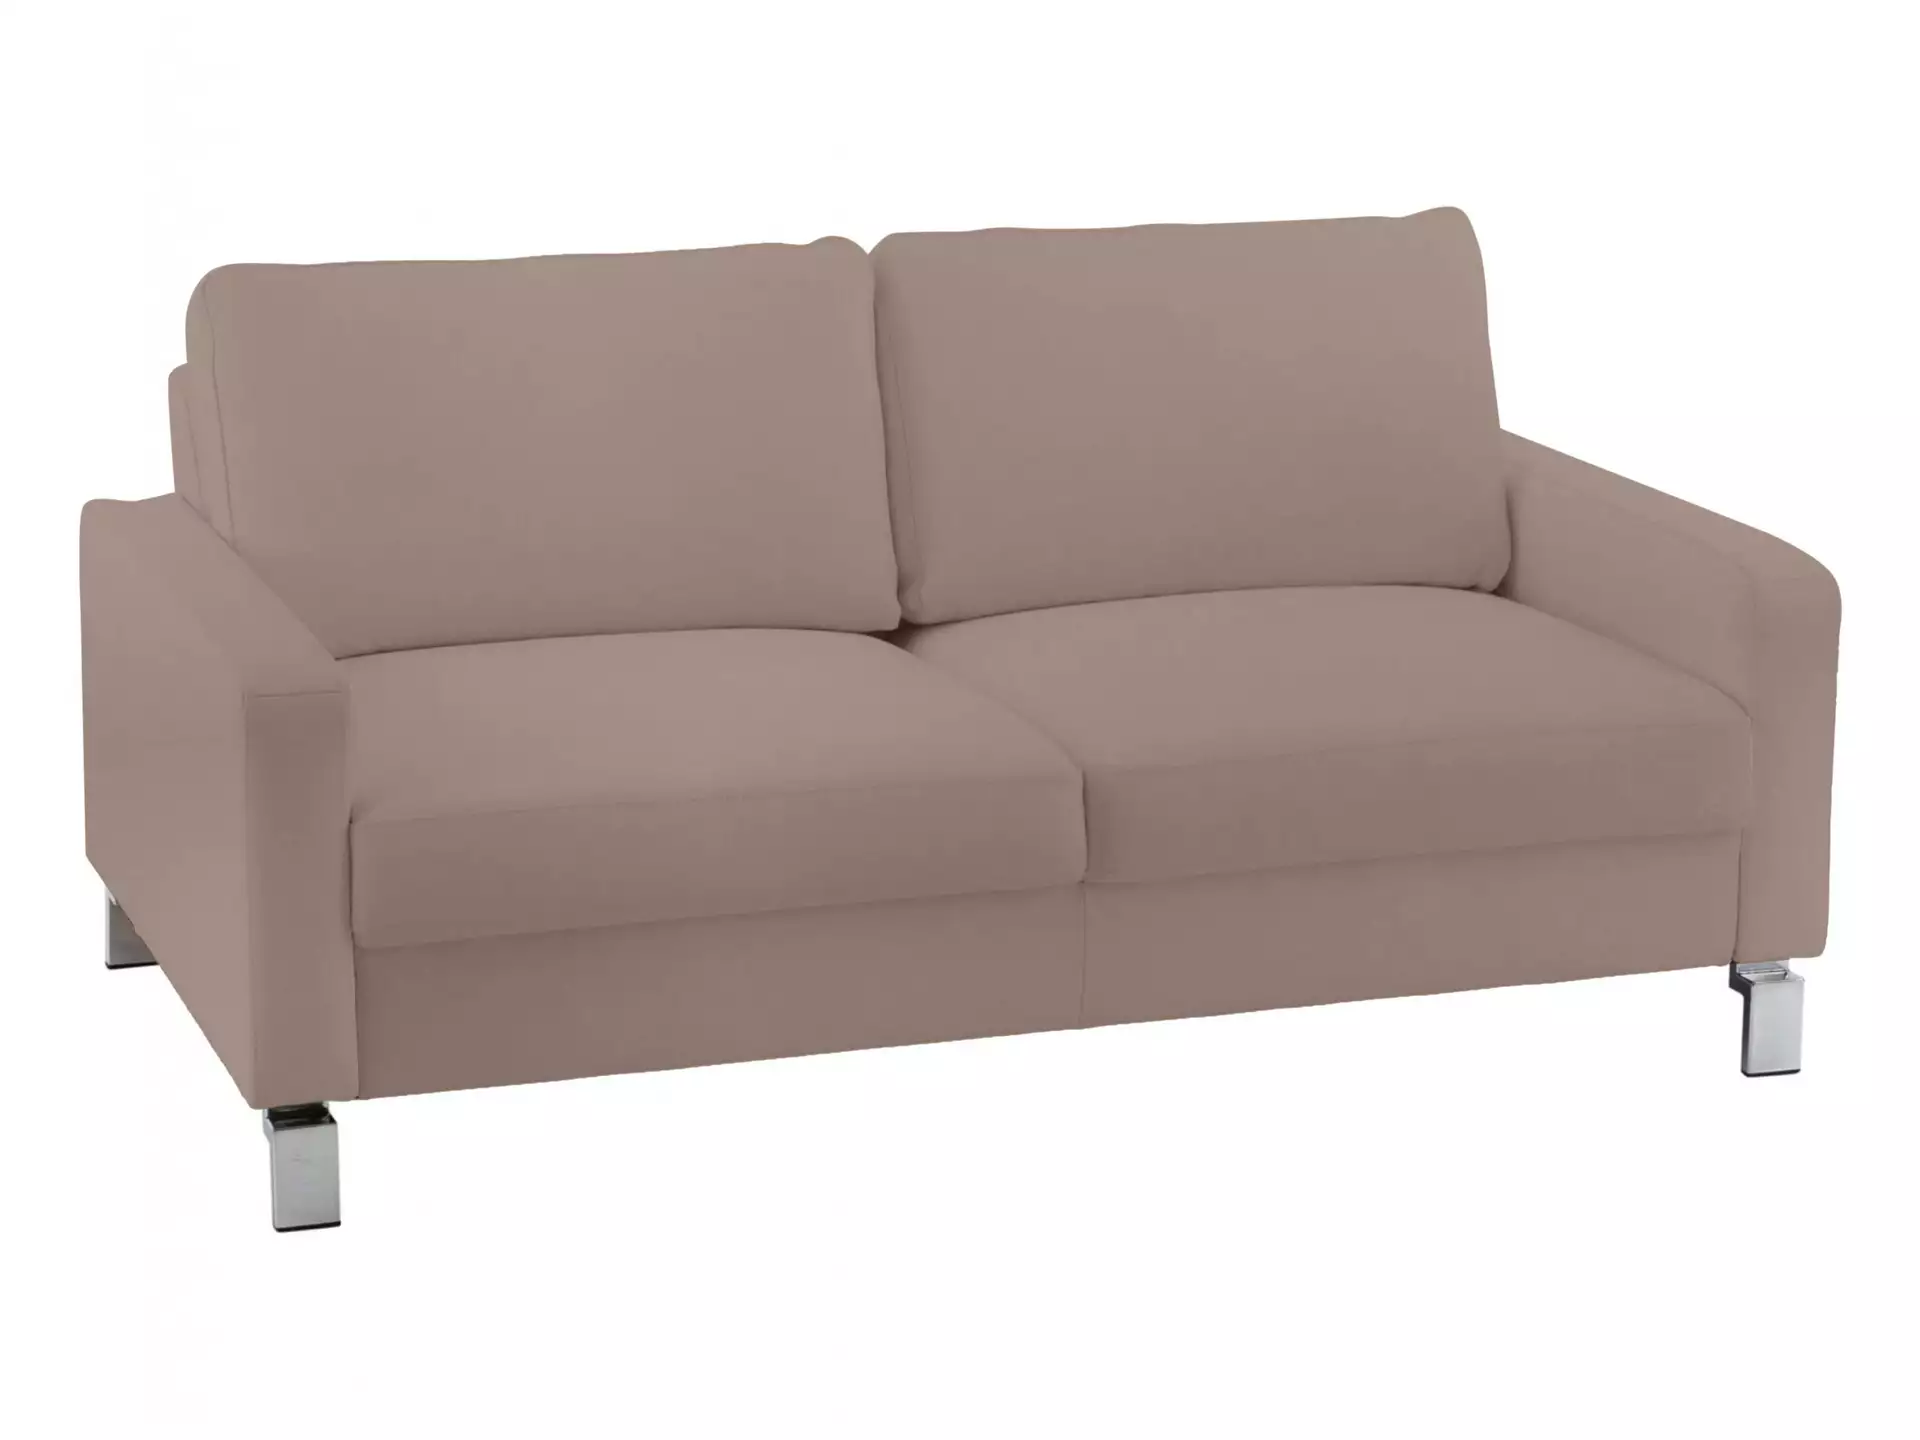 Sofa Interims Basic B: 164 cm Candy / Farbe: Asphalt / Material: Leder Basic